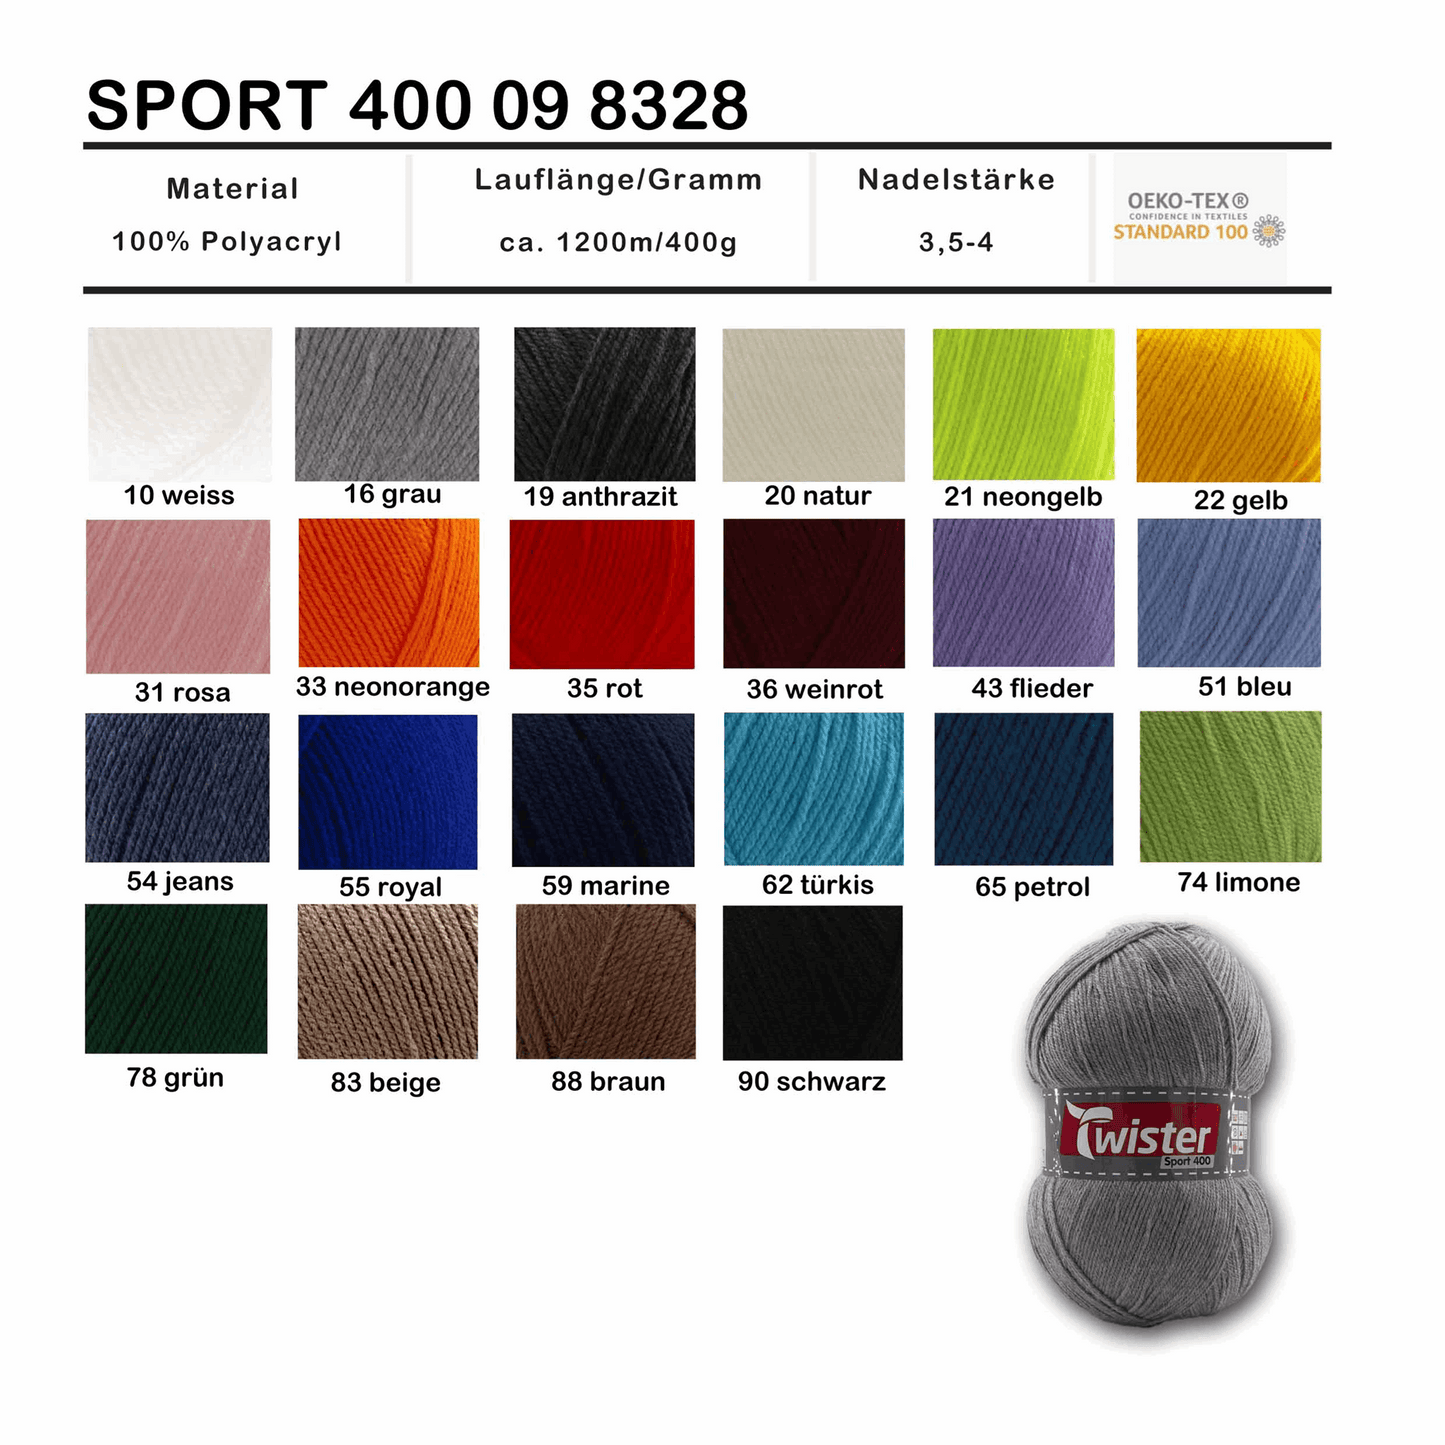 Twister Sport 400, 98328, Farbe grün 78